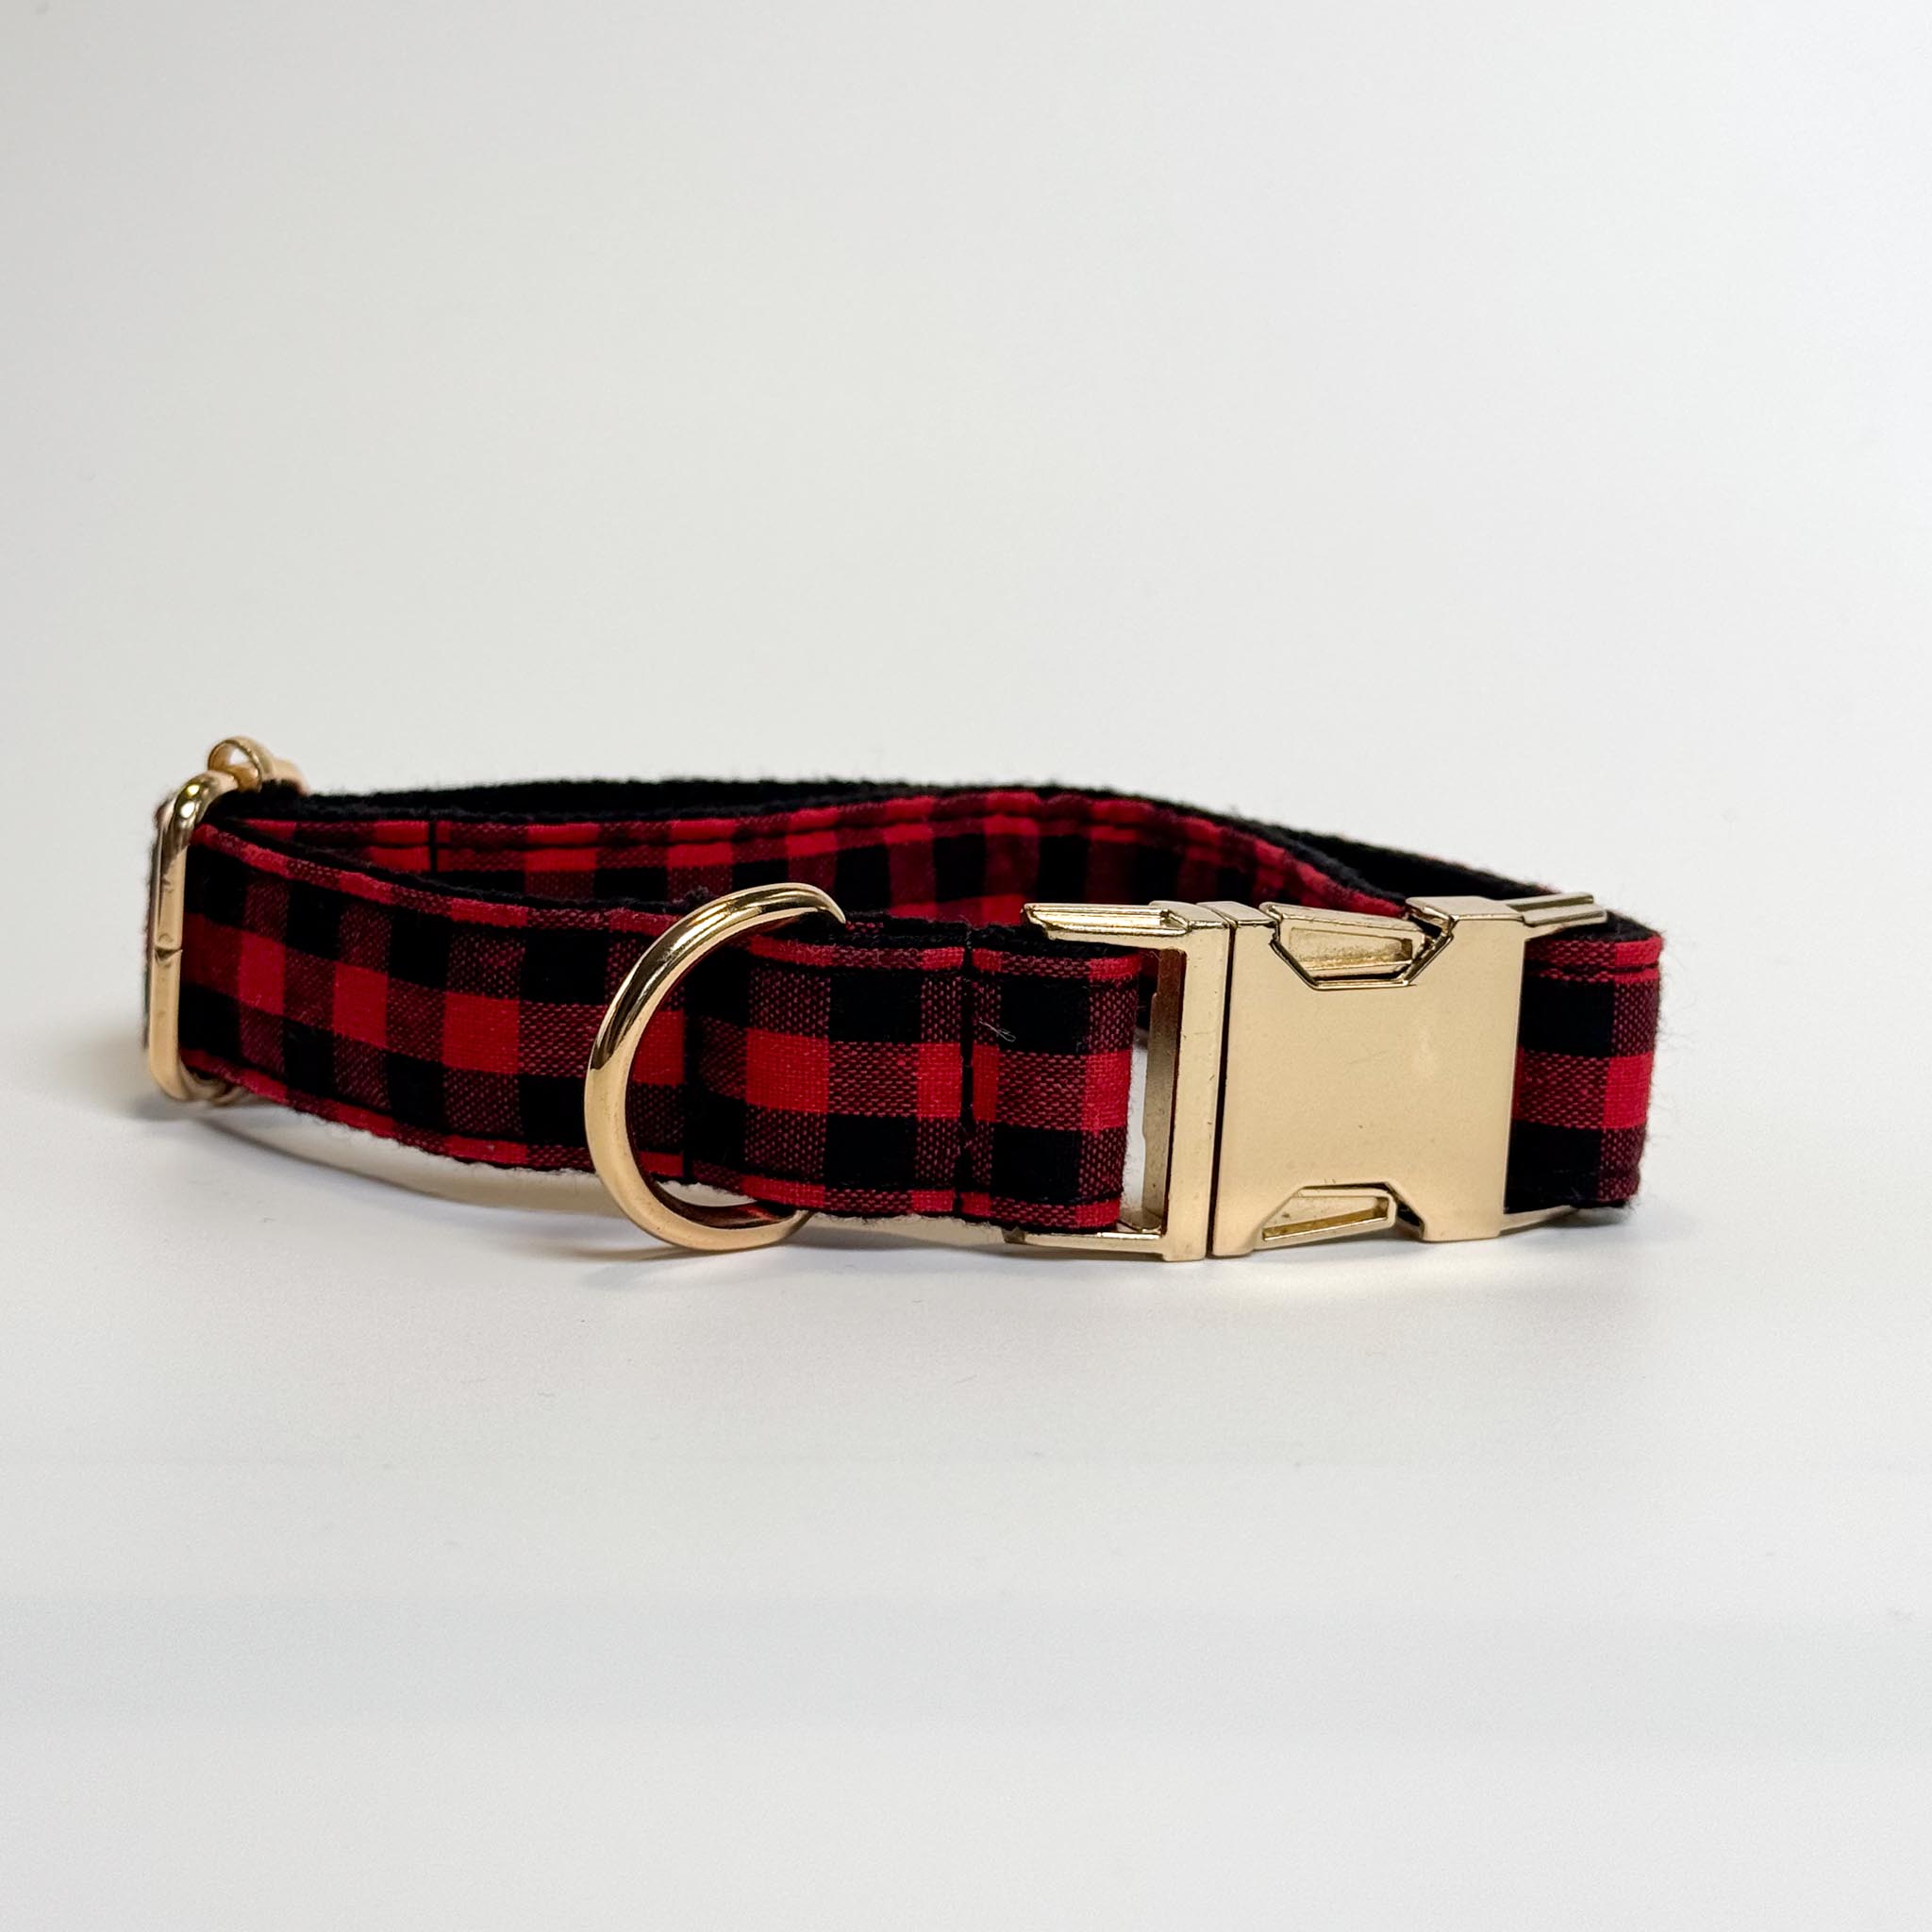 The Lumberjack Engraved Dog Collar